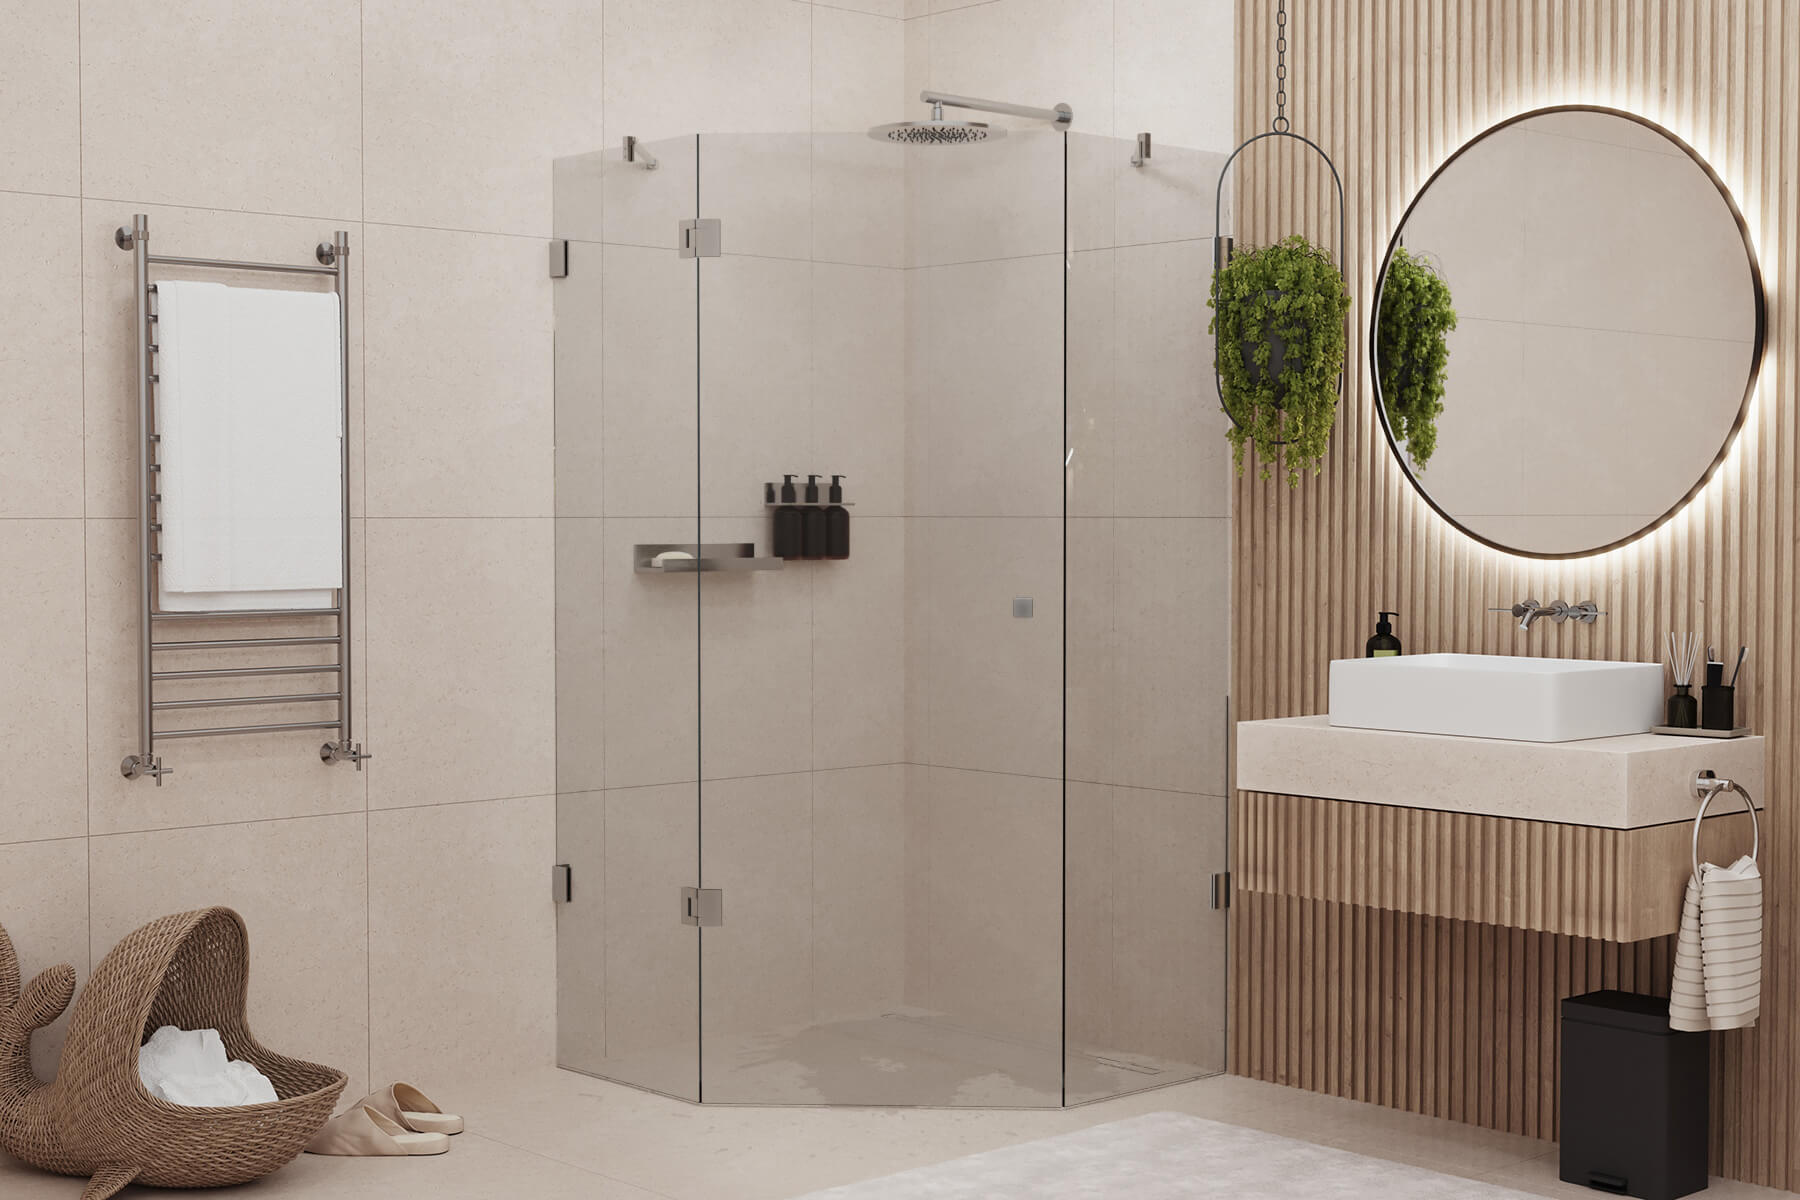 Moderne Fünfeckdusche in Badezimmer im beigen Look